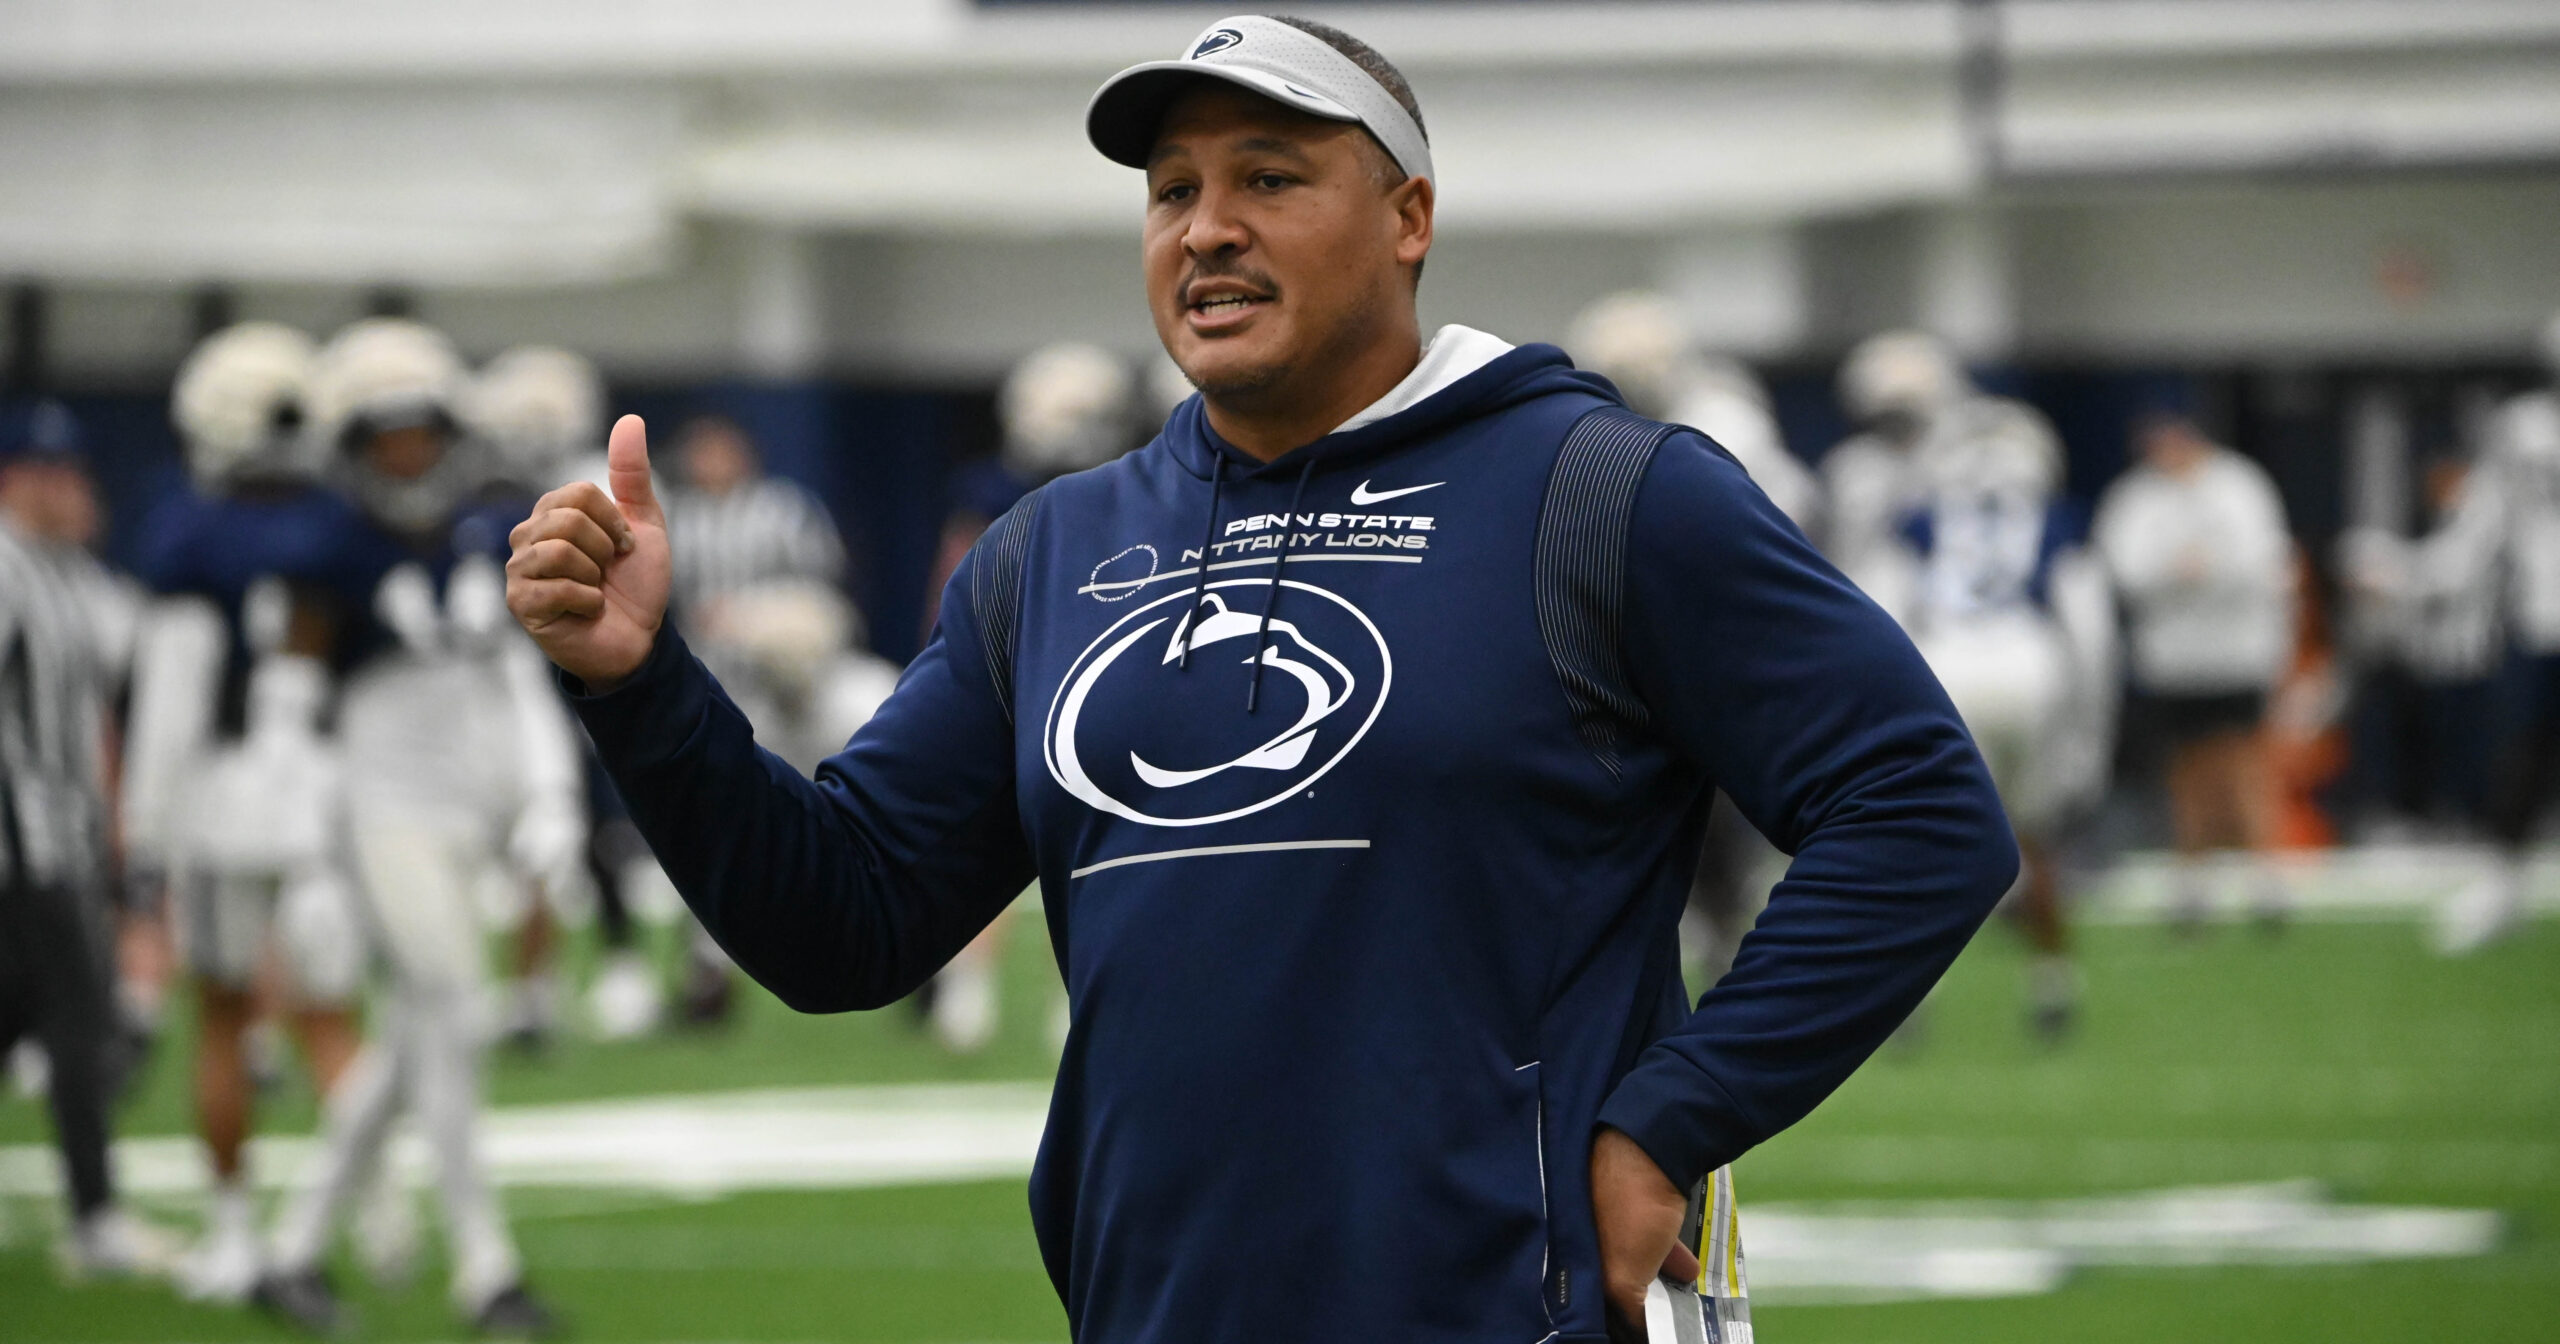 Penn State running backs coach Ja'Juan Seider